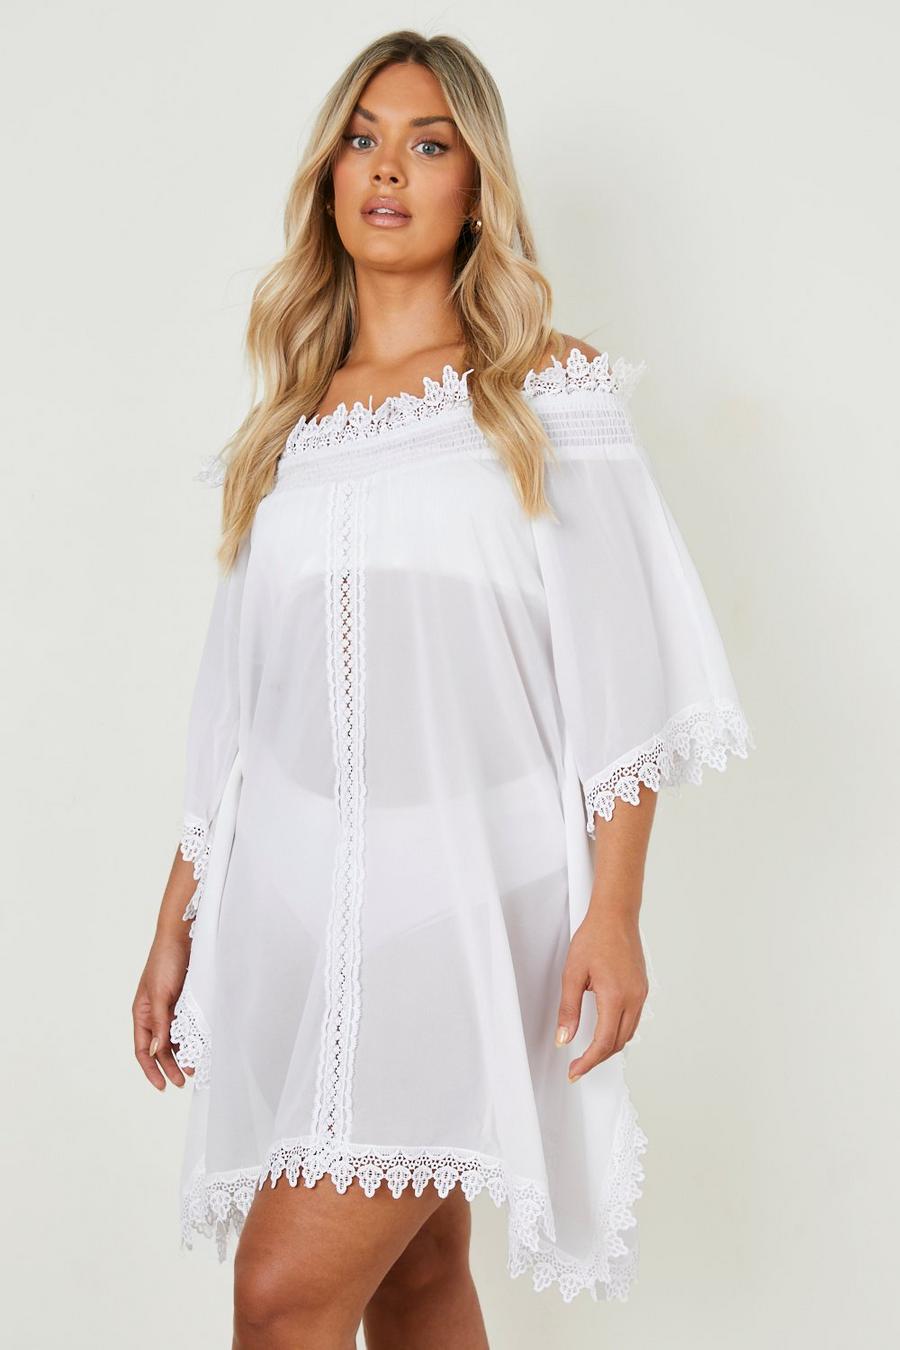 לבן white שמלת חוף בארדו עם עיטורי תחרה, מידות גדולות